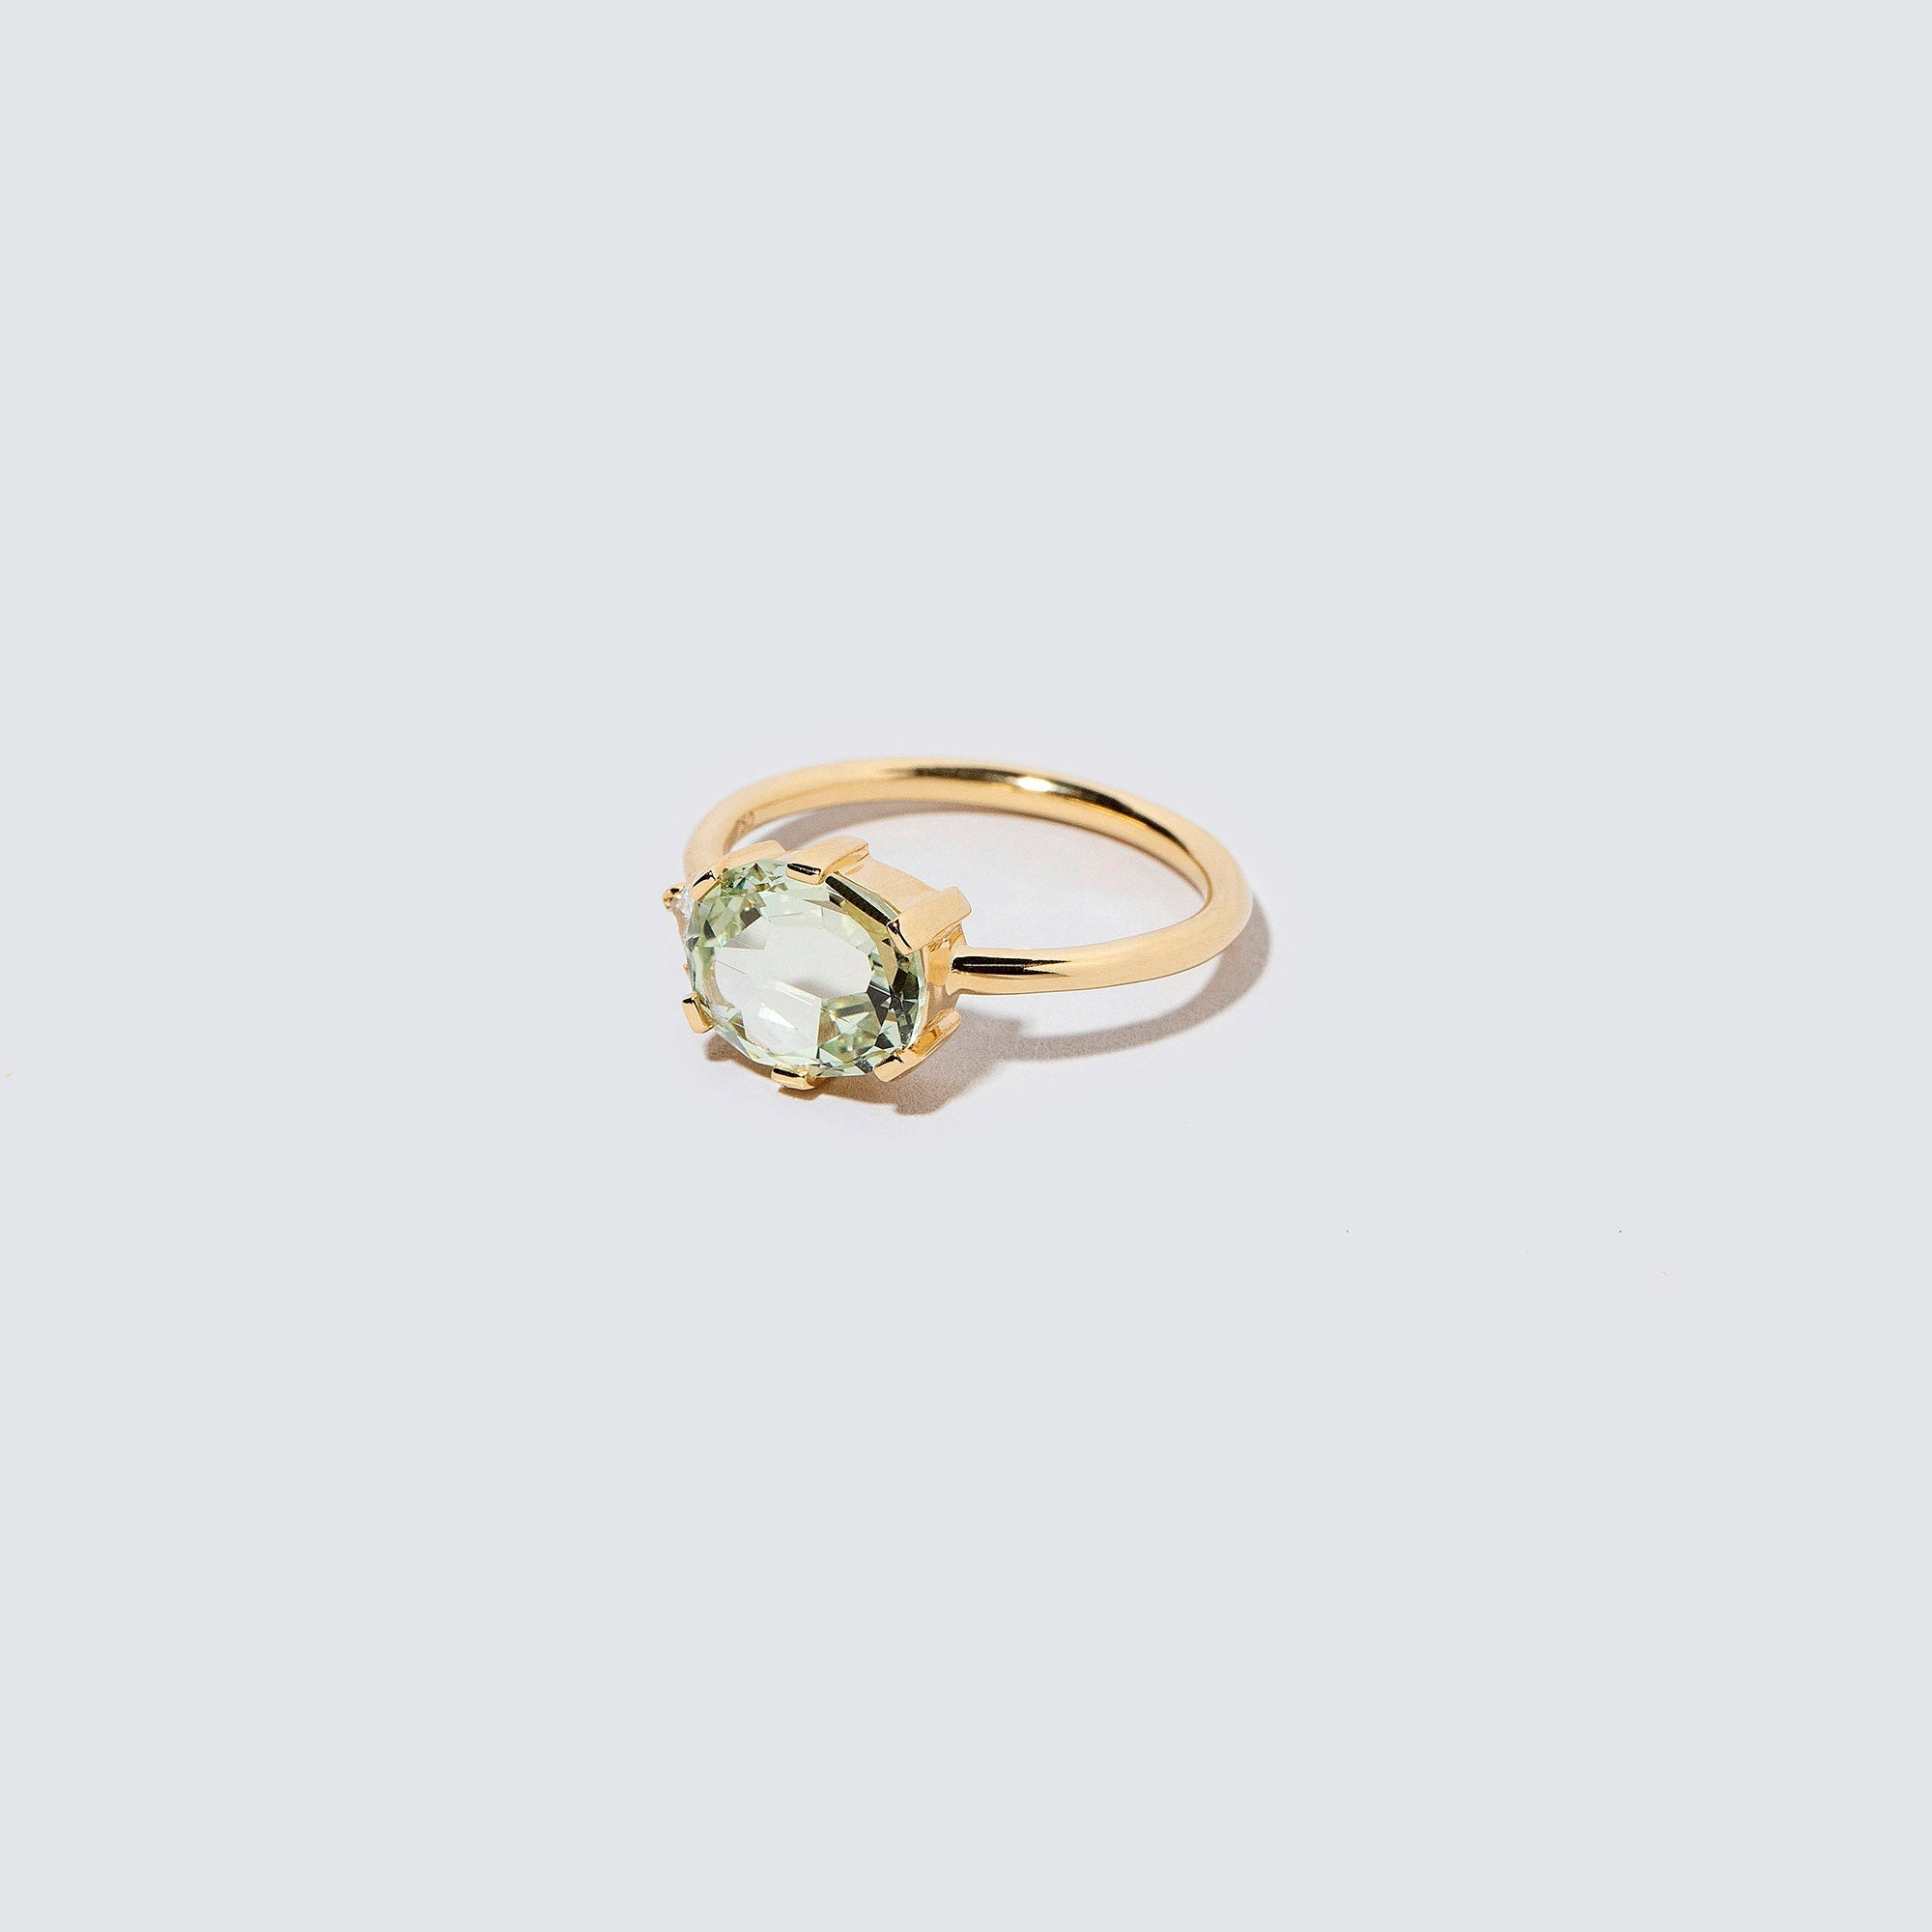 product_details:: Laurel Ring on light color background.